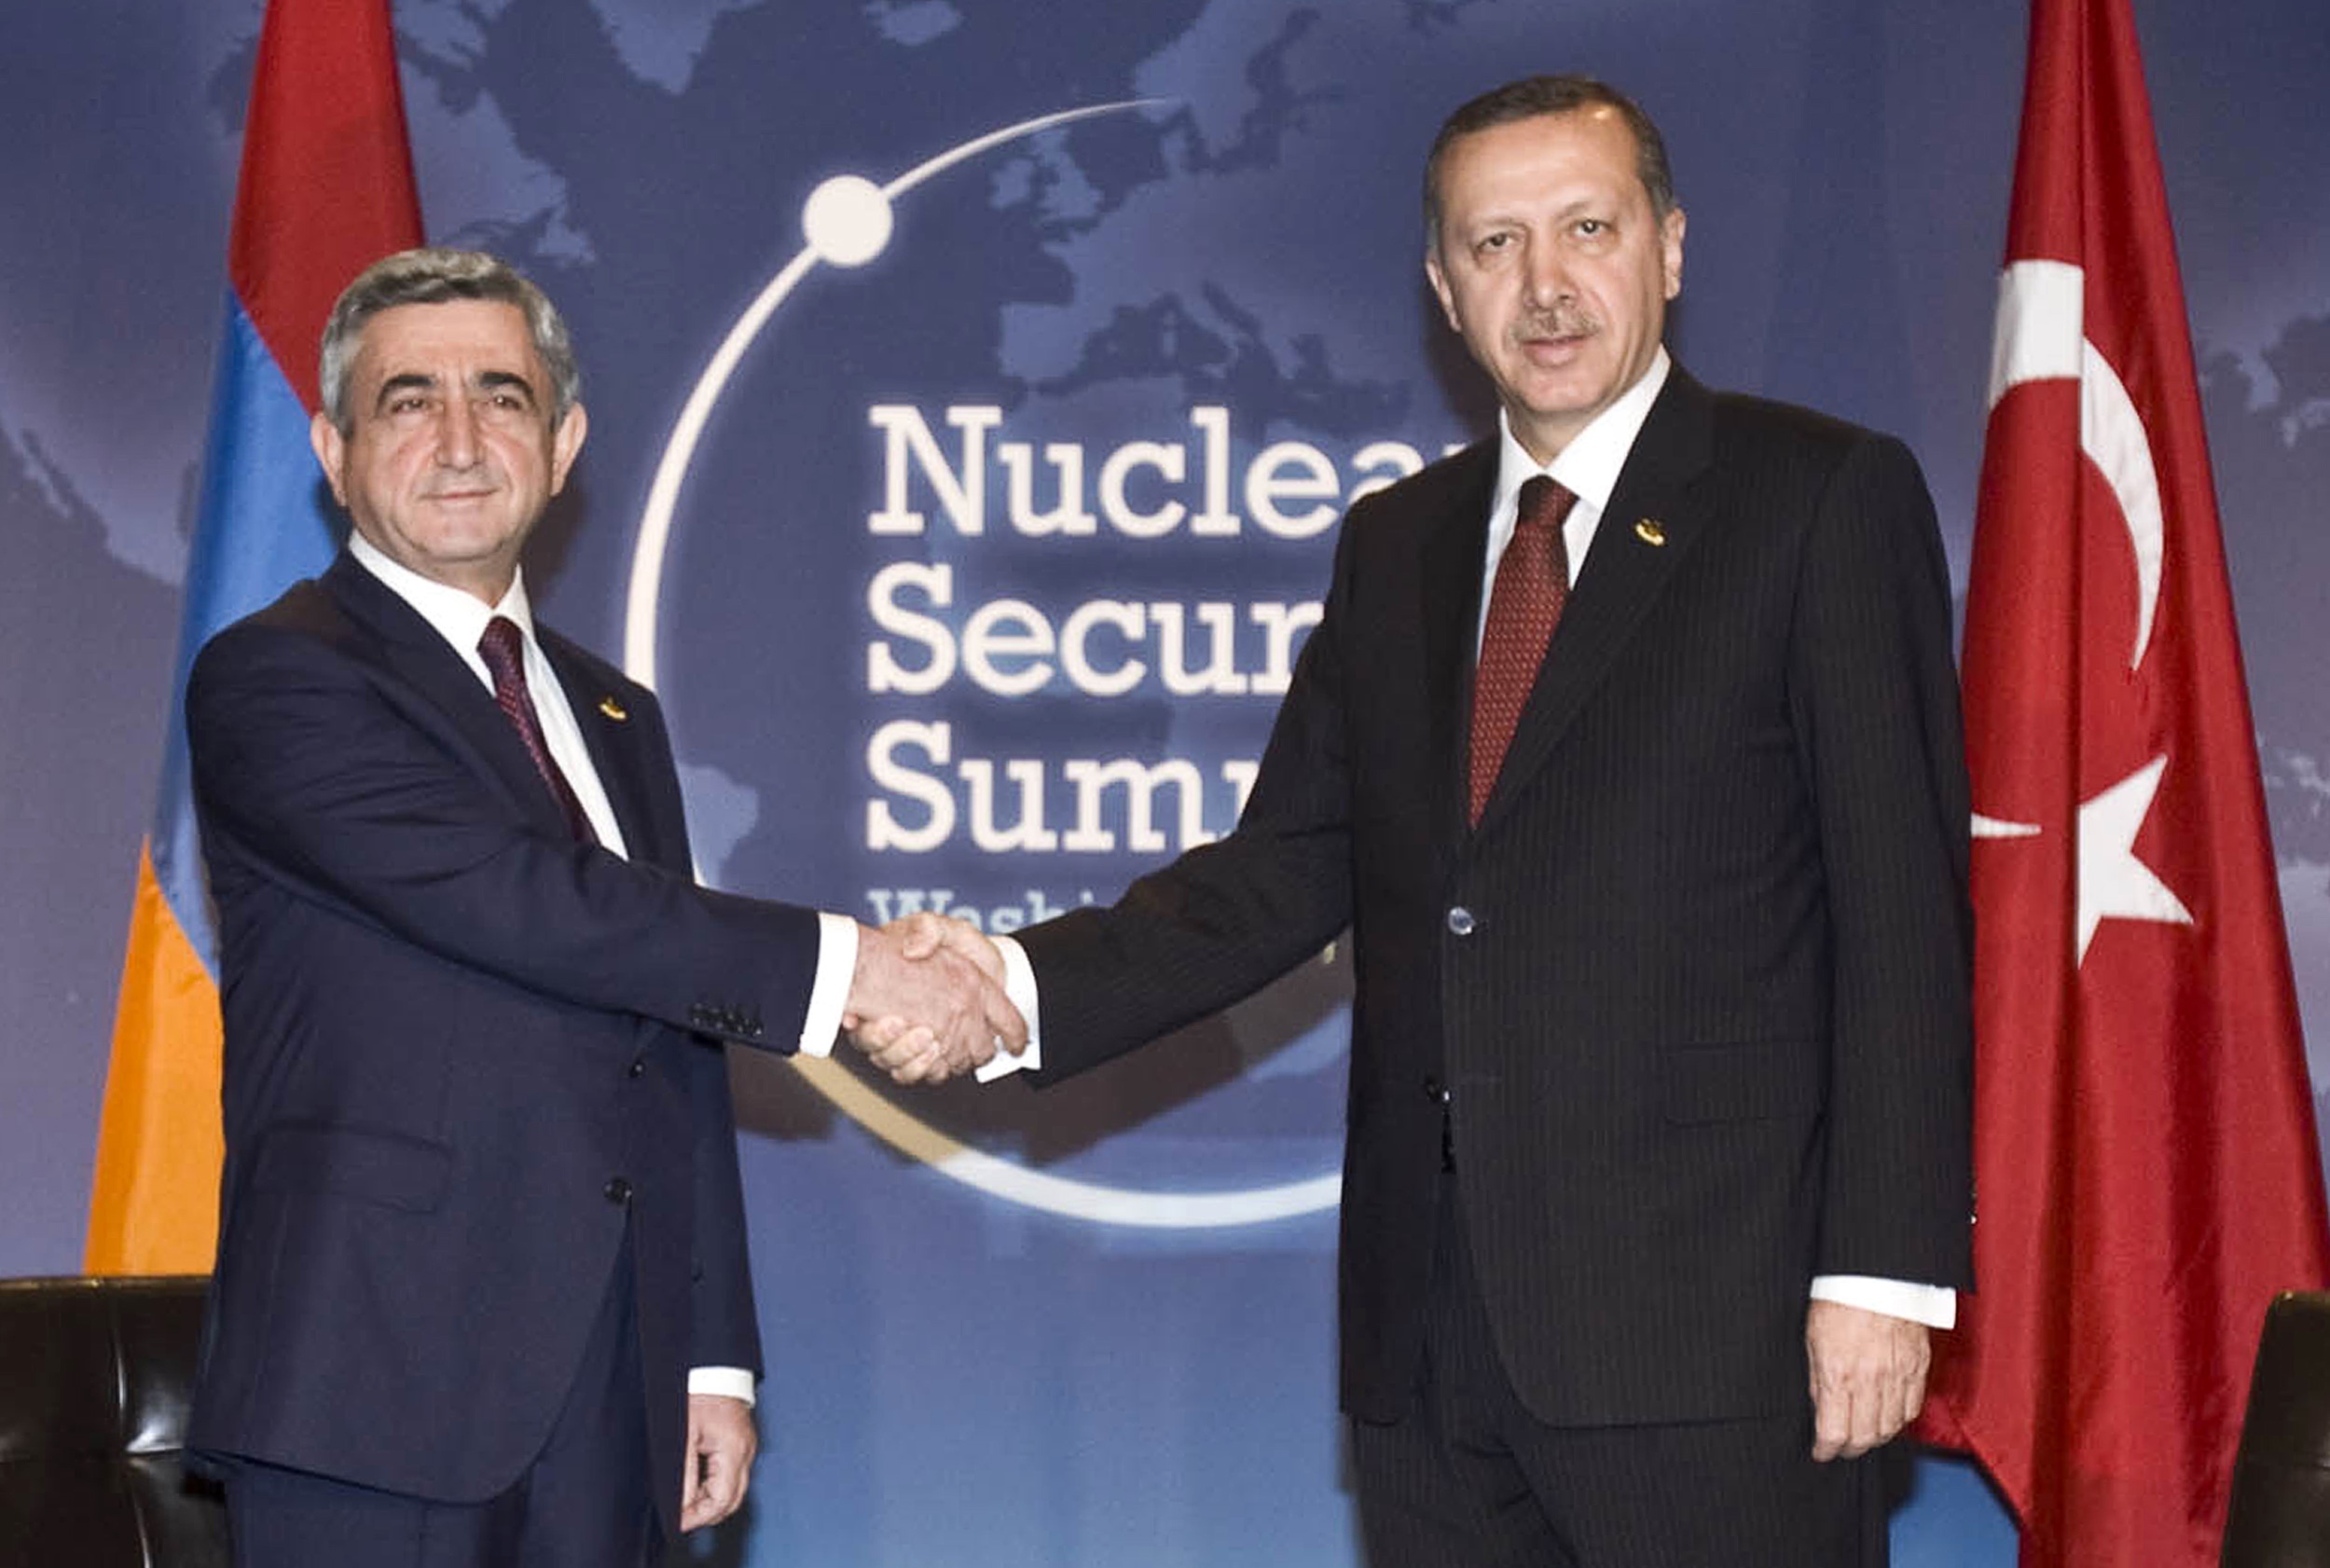 Ο αρμένιος πρόεδρος Σαρκισιάν και ο τούρκος πρωθυπουργός Ερντογάν. ΦΩΤΟ REUTERS